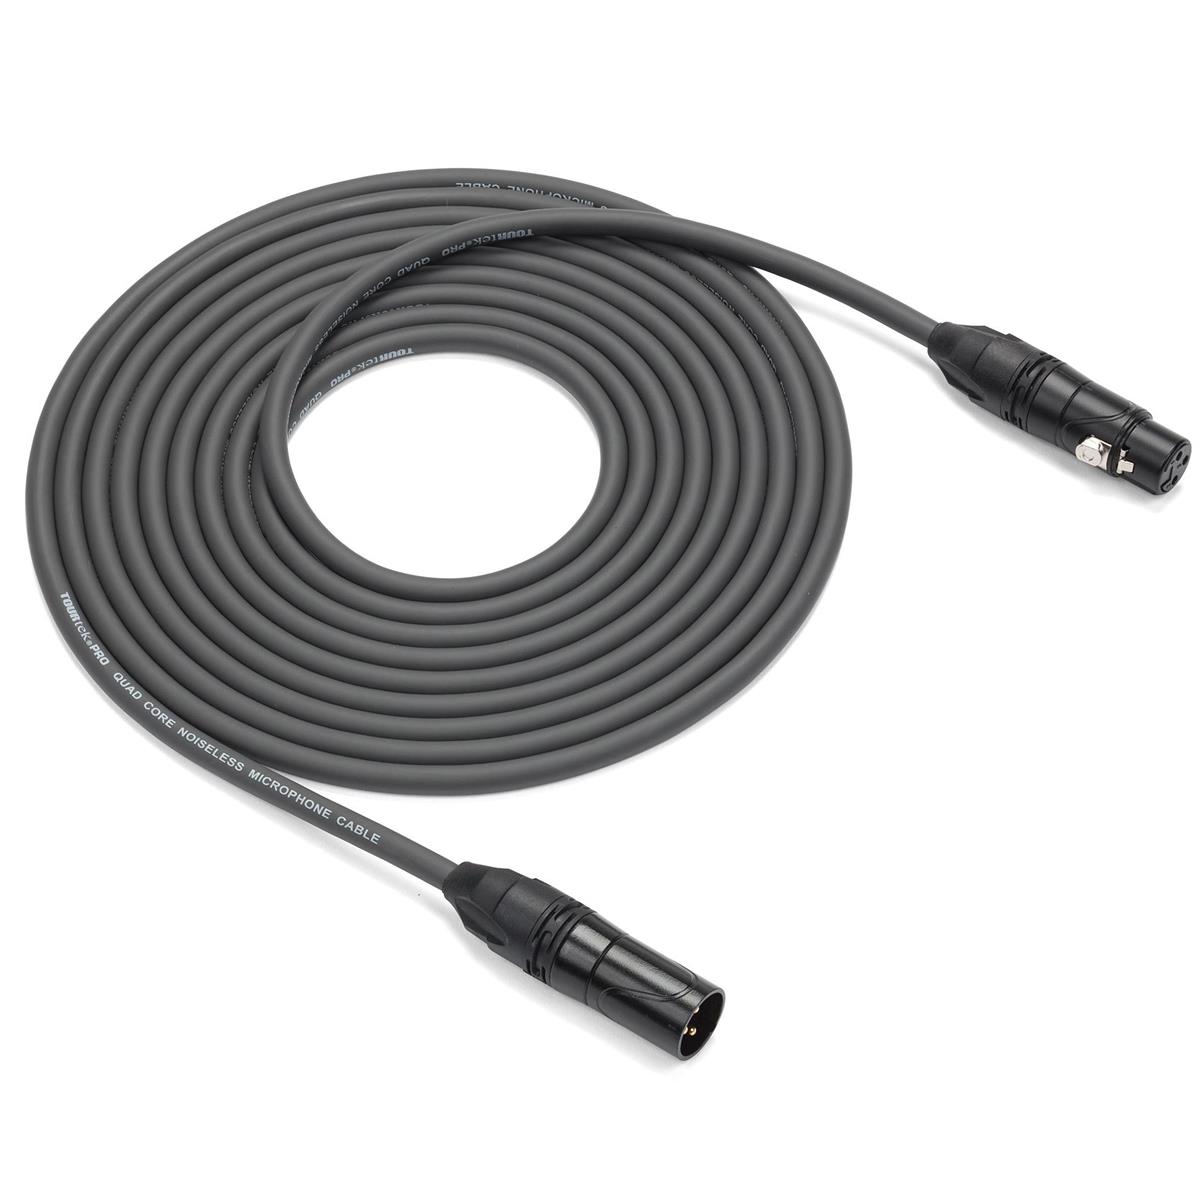 Image of Samson Tourtek Pro 15' Quad Core Microphone Cable